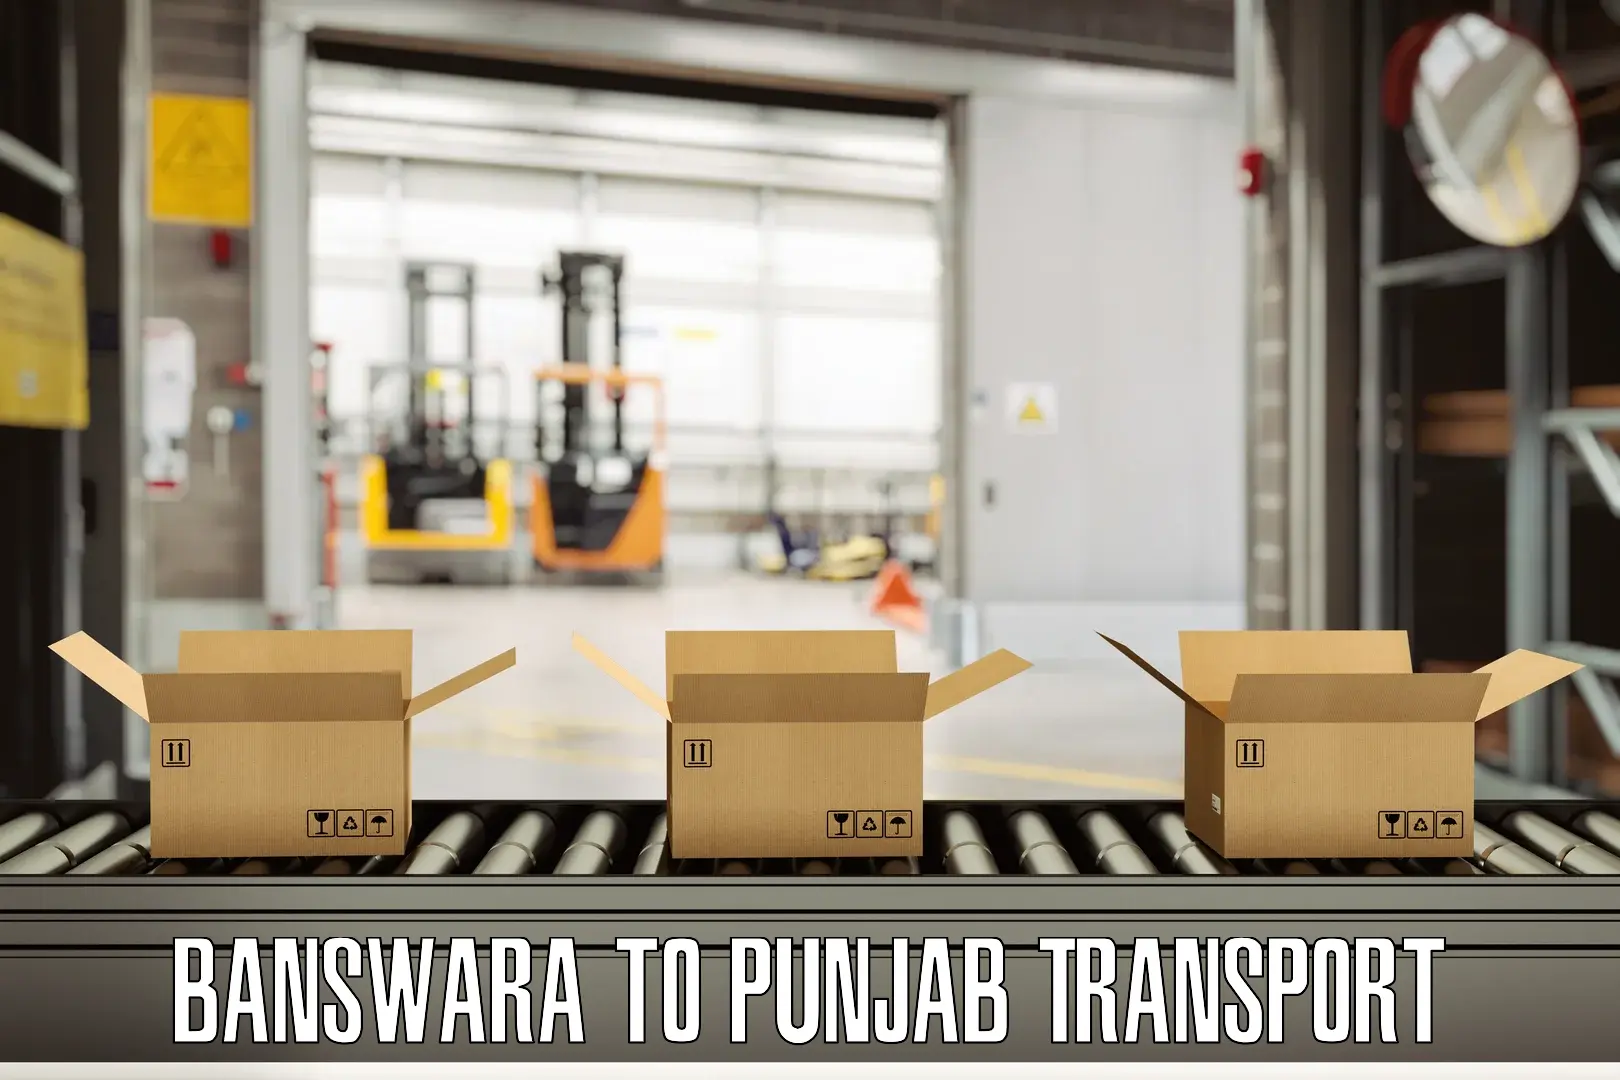 Transport in sharing Banswara to Patiala